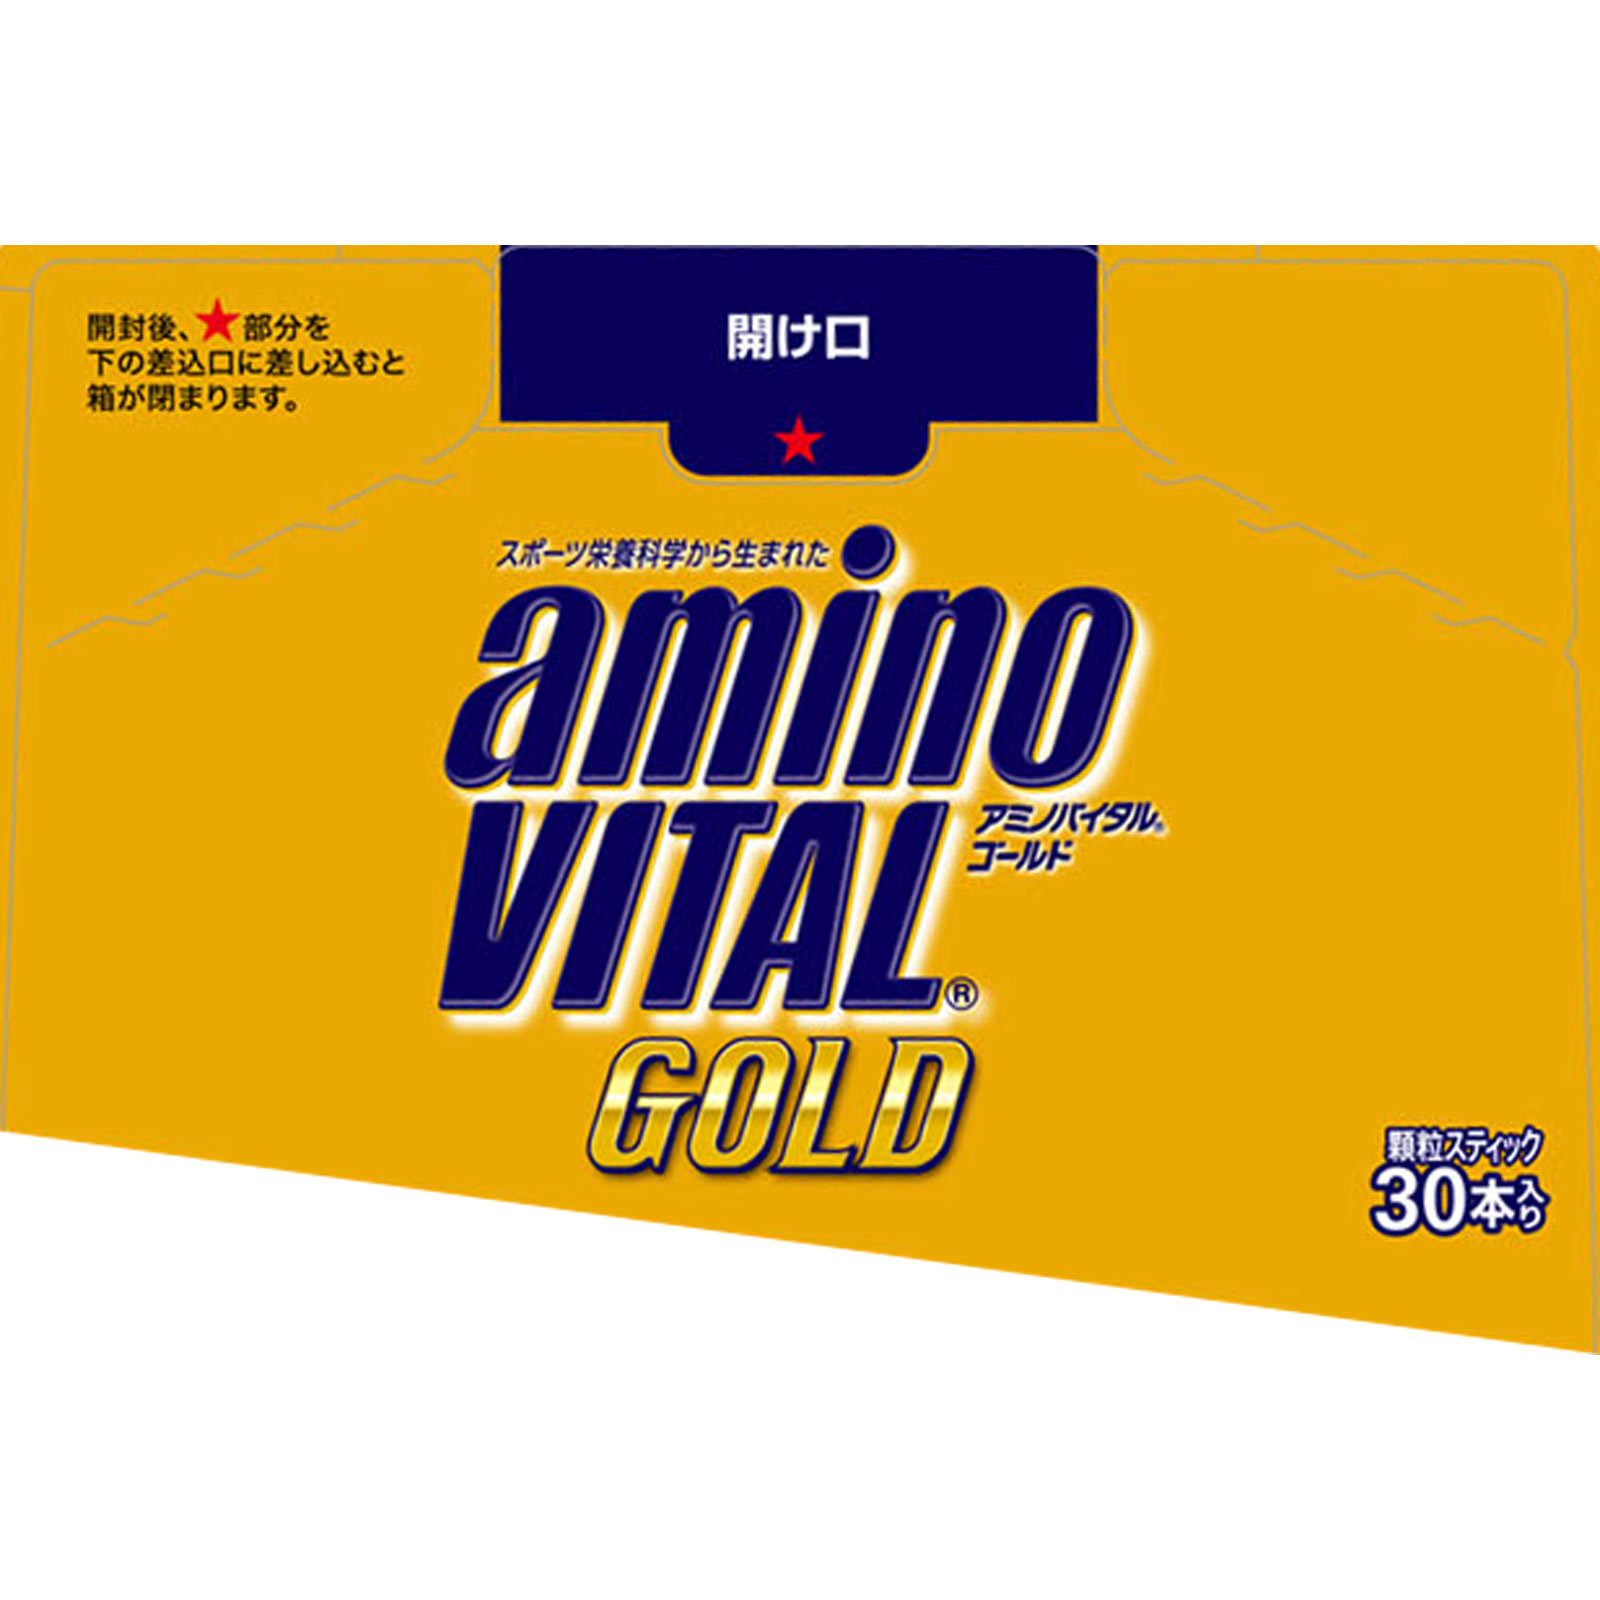 アミノバイタル GOLD 4.7g×30本入 - スポーツ